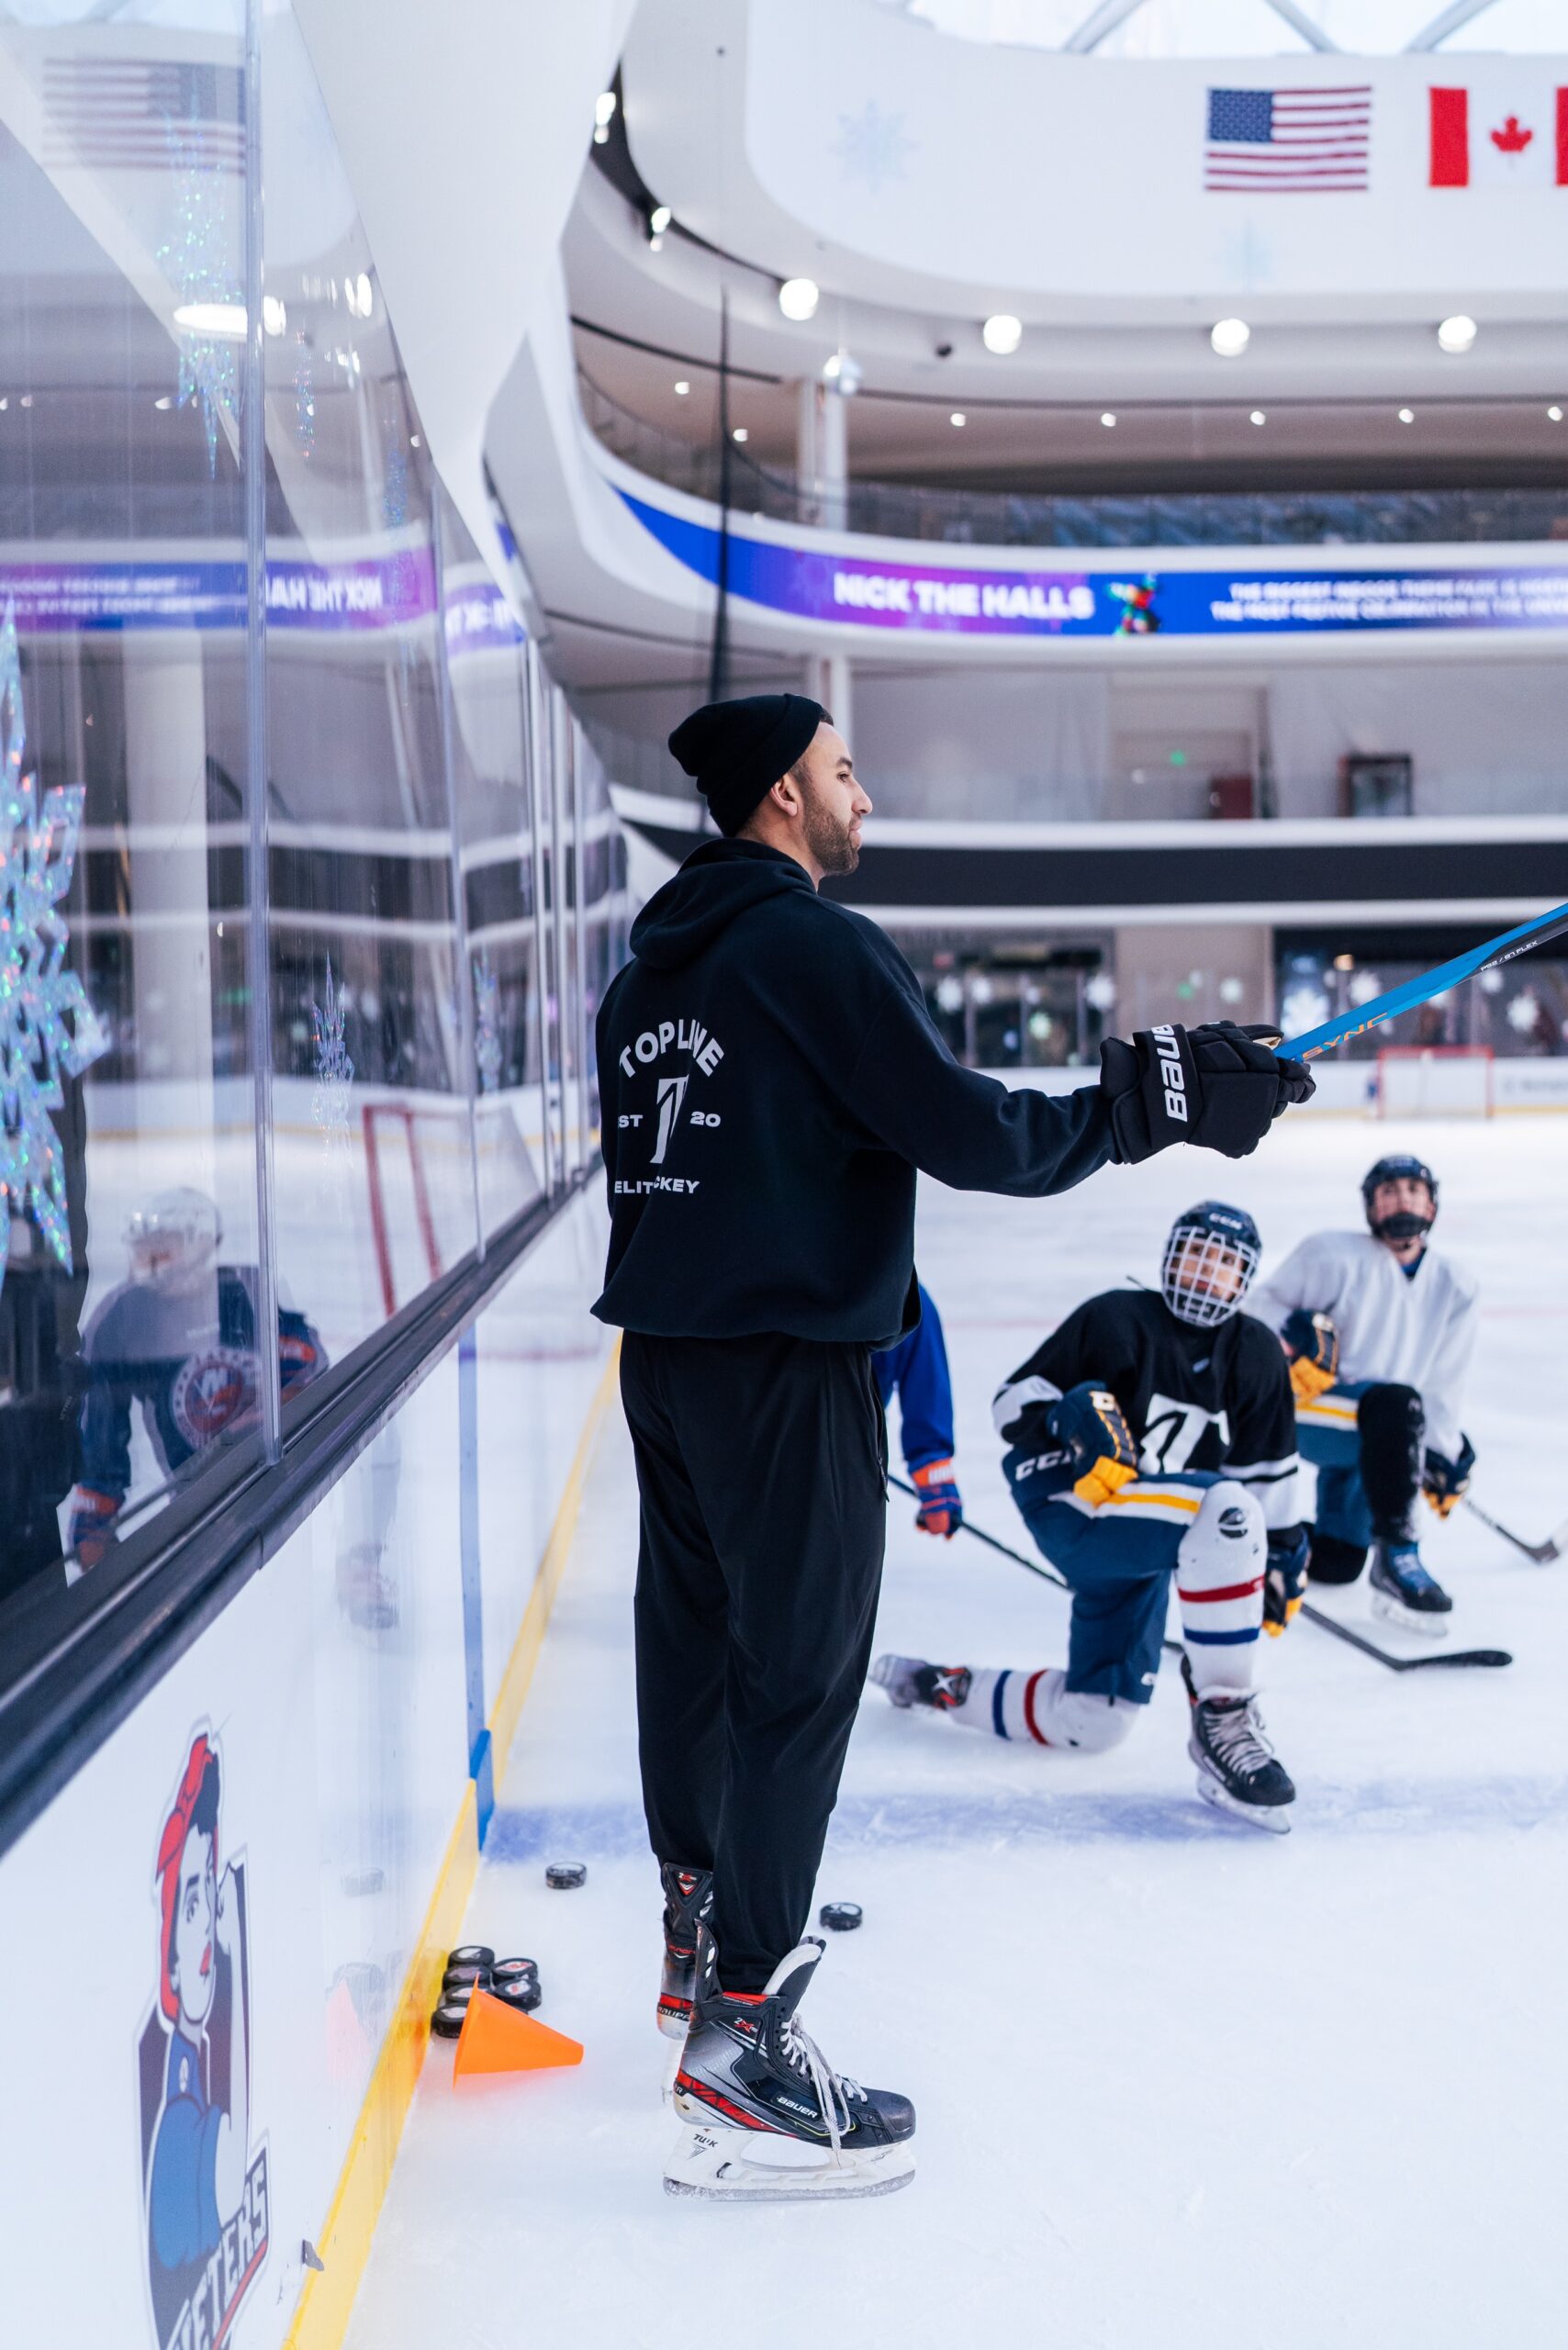 A hockey coach teaching players a drill